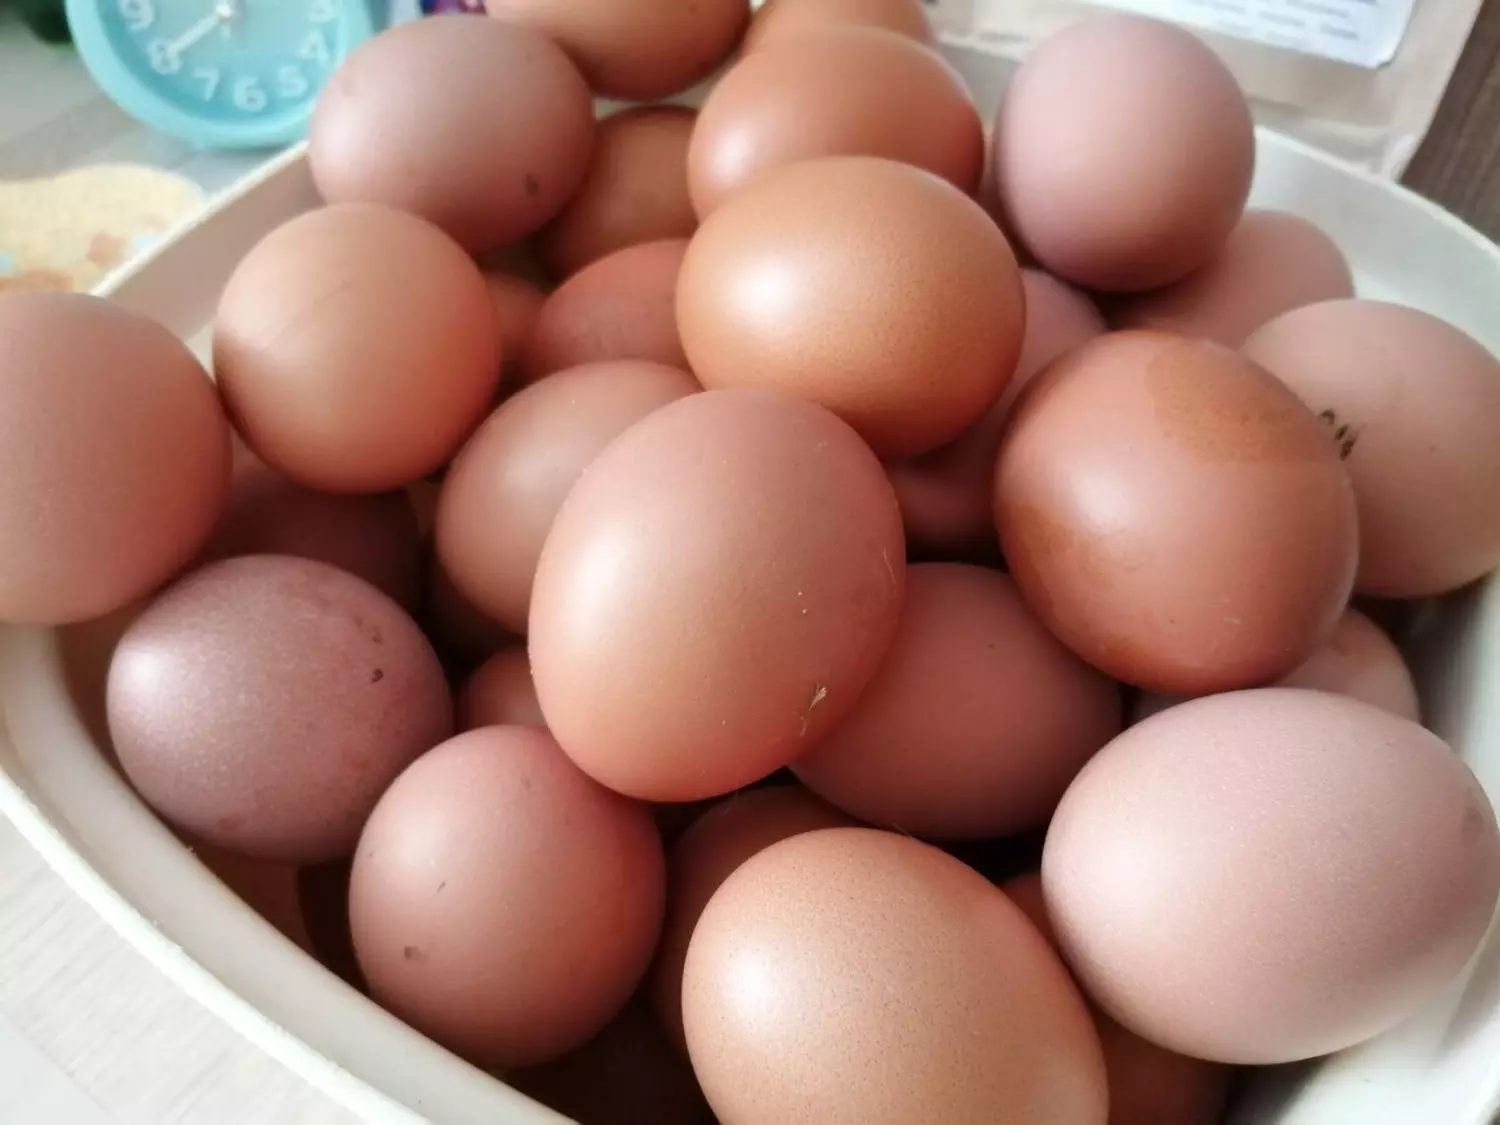 Деревенские яйца дешевле магазинных — нонсенс